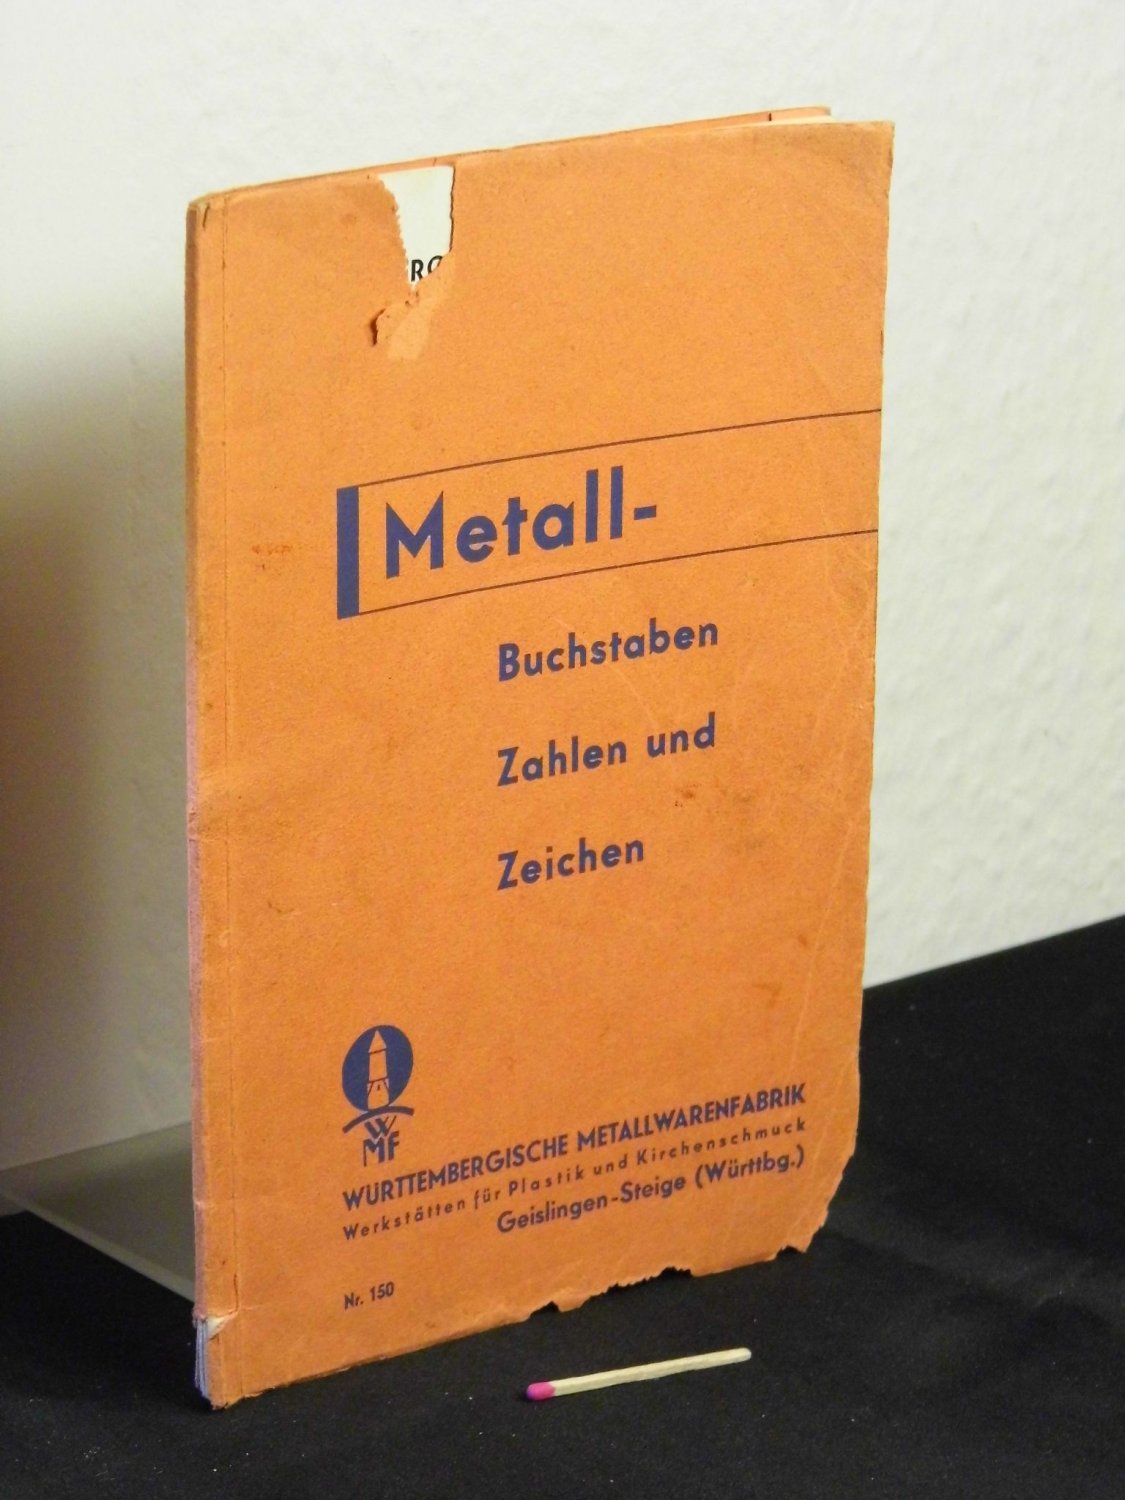 Metall-Buchstaben Zahlen und Zeichen 1933 - Nr.“ (Württembergische  Metallwarenfabrik WMF -) – Buch antiquarisch kaufen – A02prrFw01ZZL